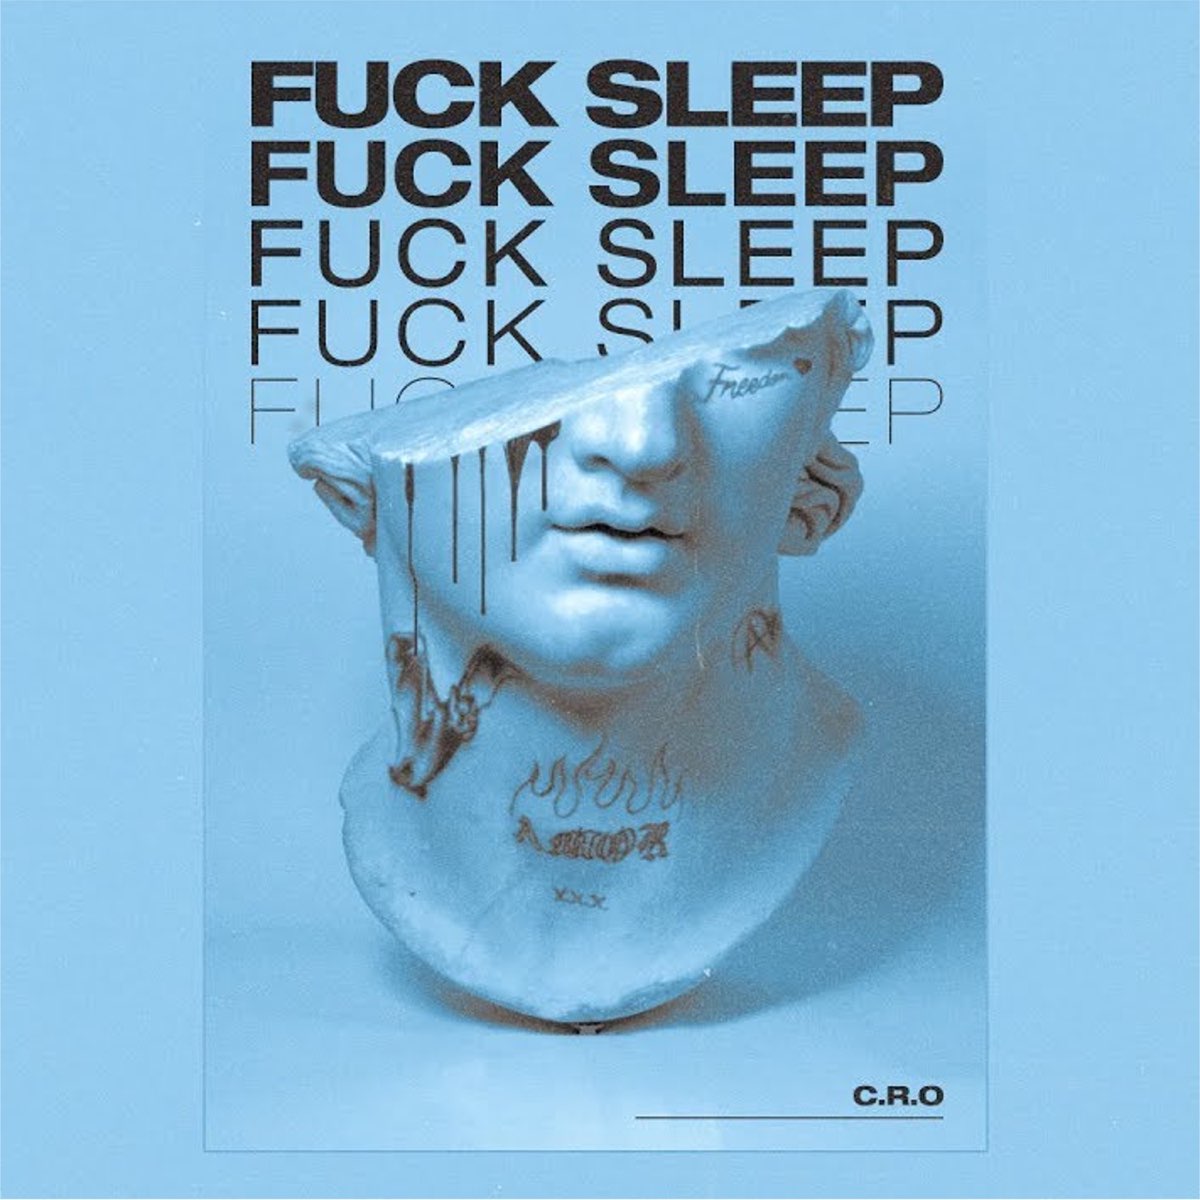 Sleeping Fuck